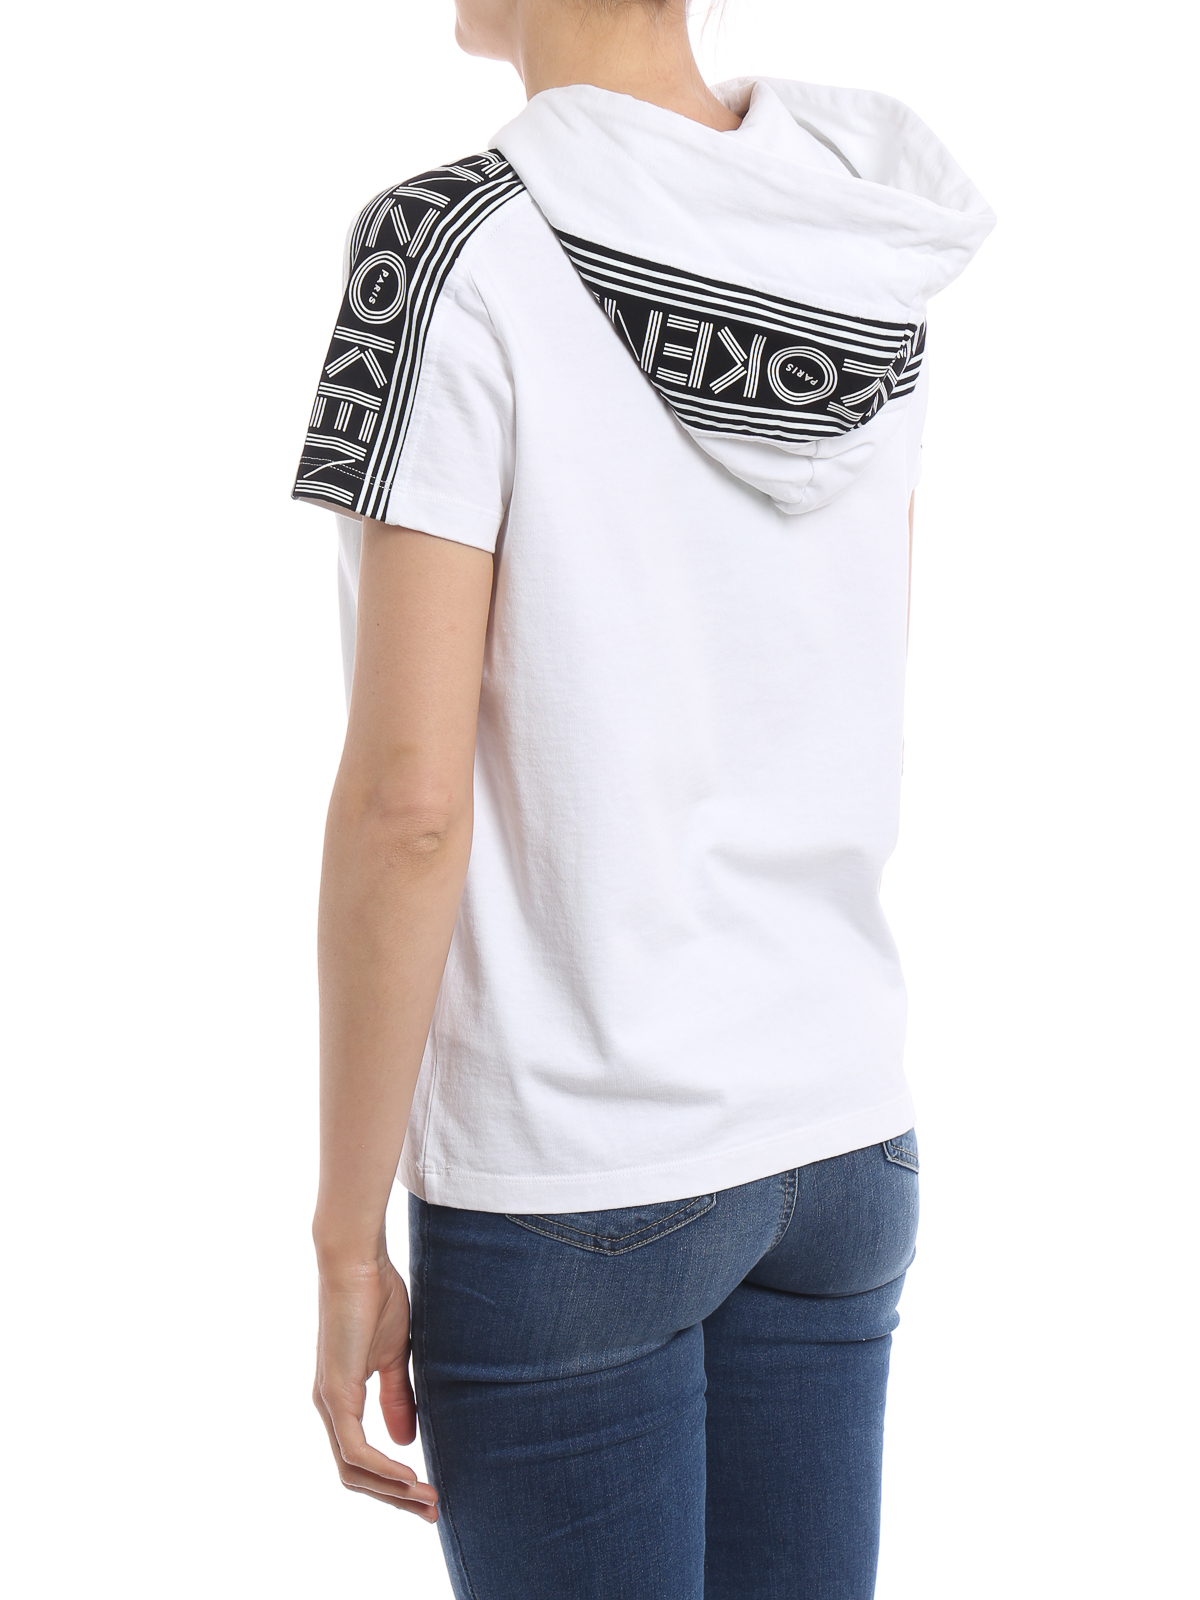 Tシャツ Kenzo - Tシャツ レディース - 白 - F752T074898501